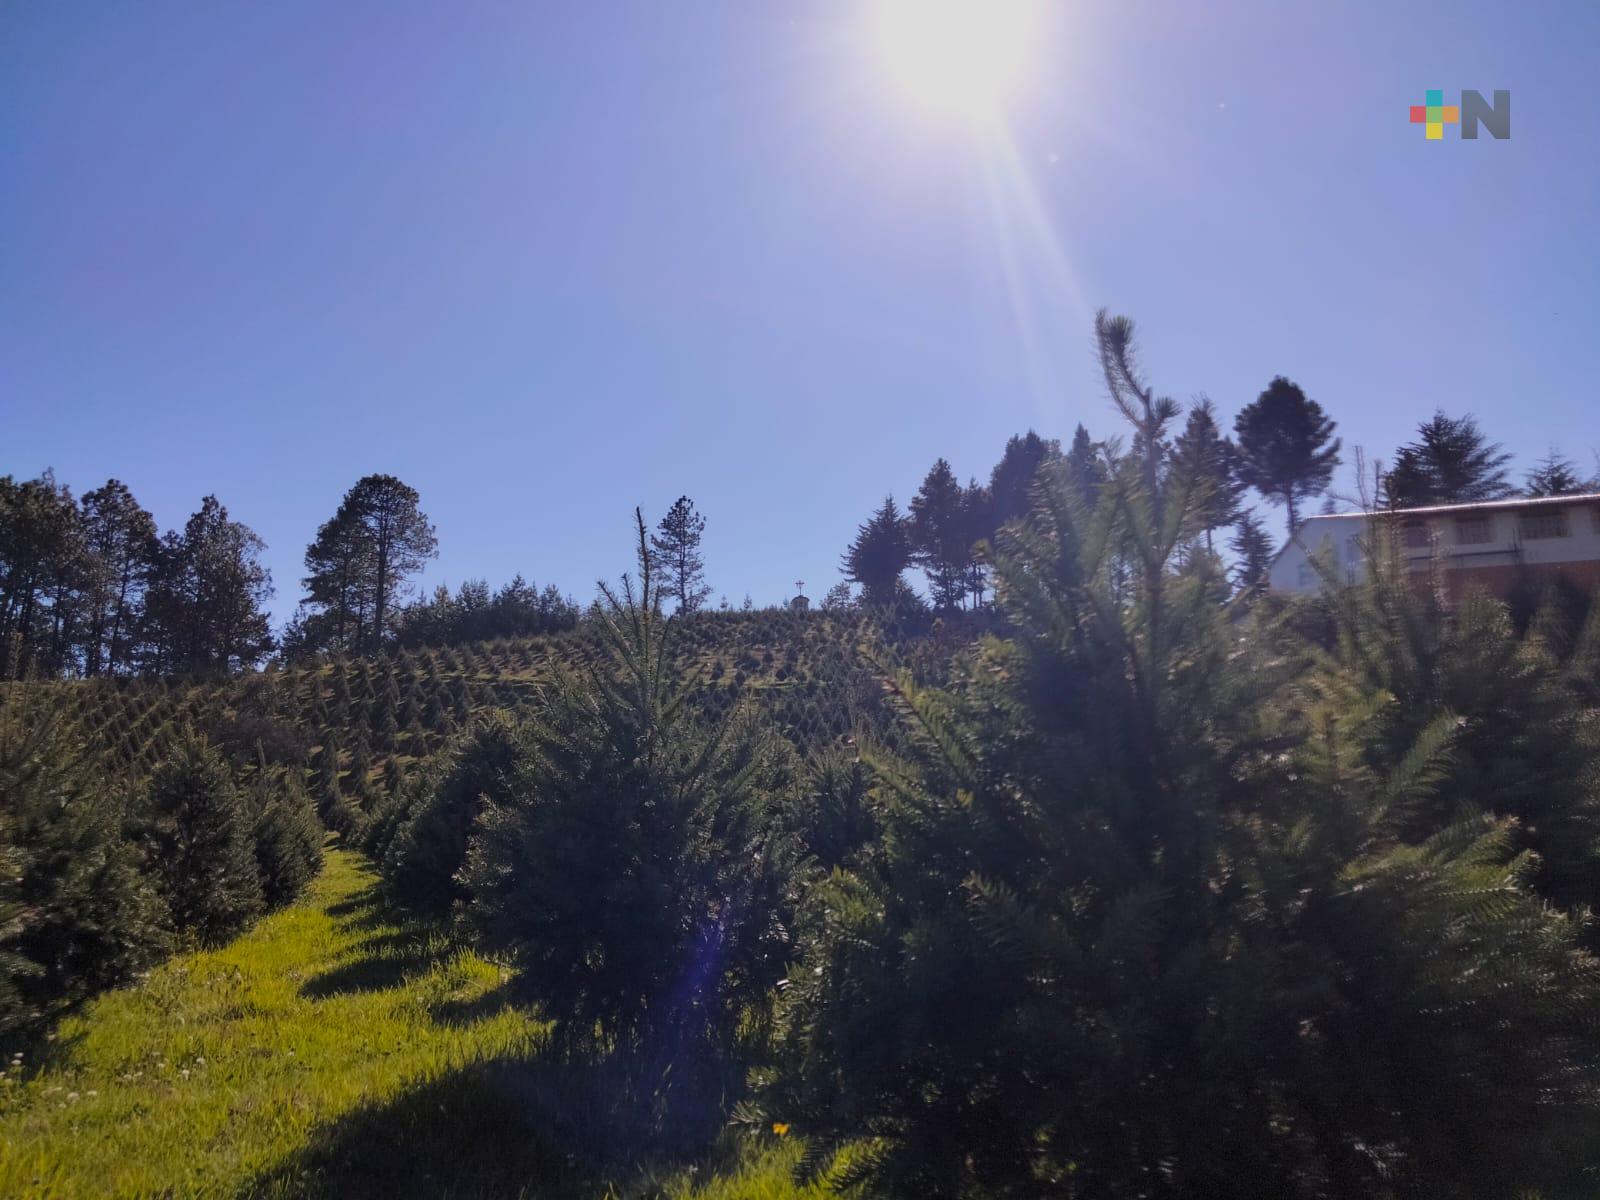 Invitan a adquirir árboles de Navidad cultivados de manera sustentable